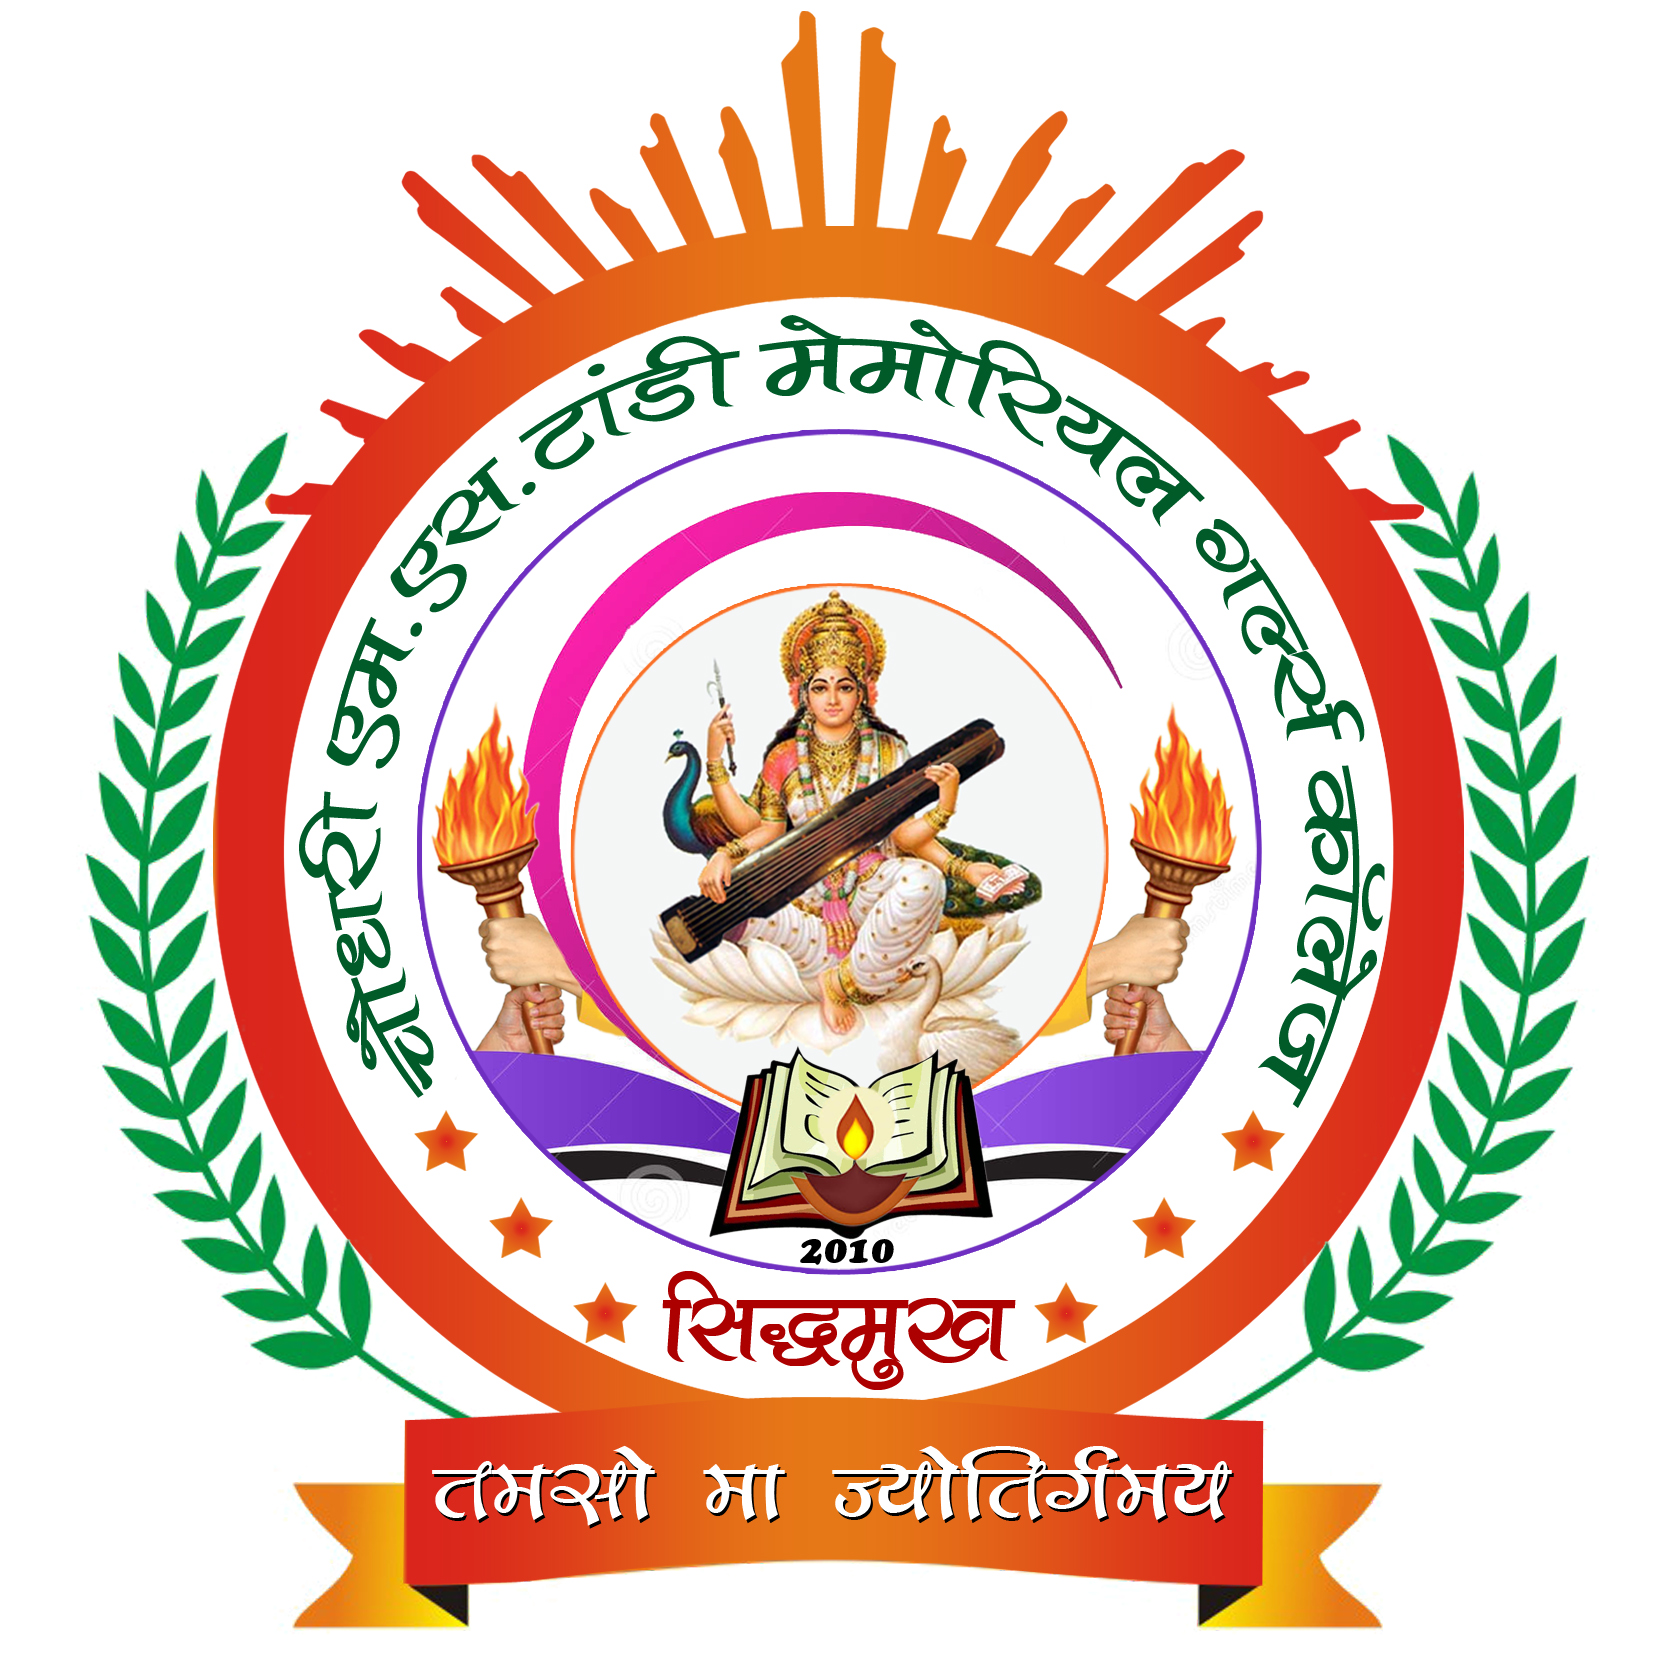 Choudhary M.S. Tandi Memorial Girls College